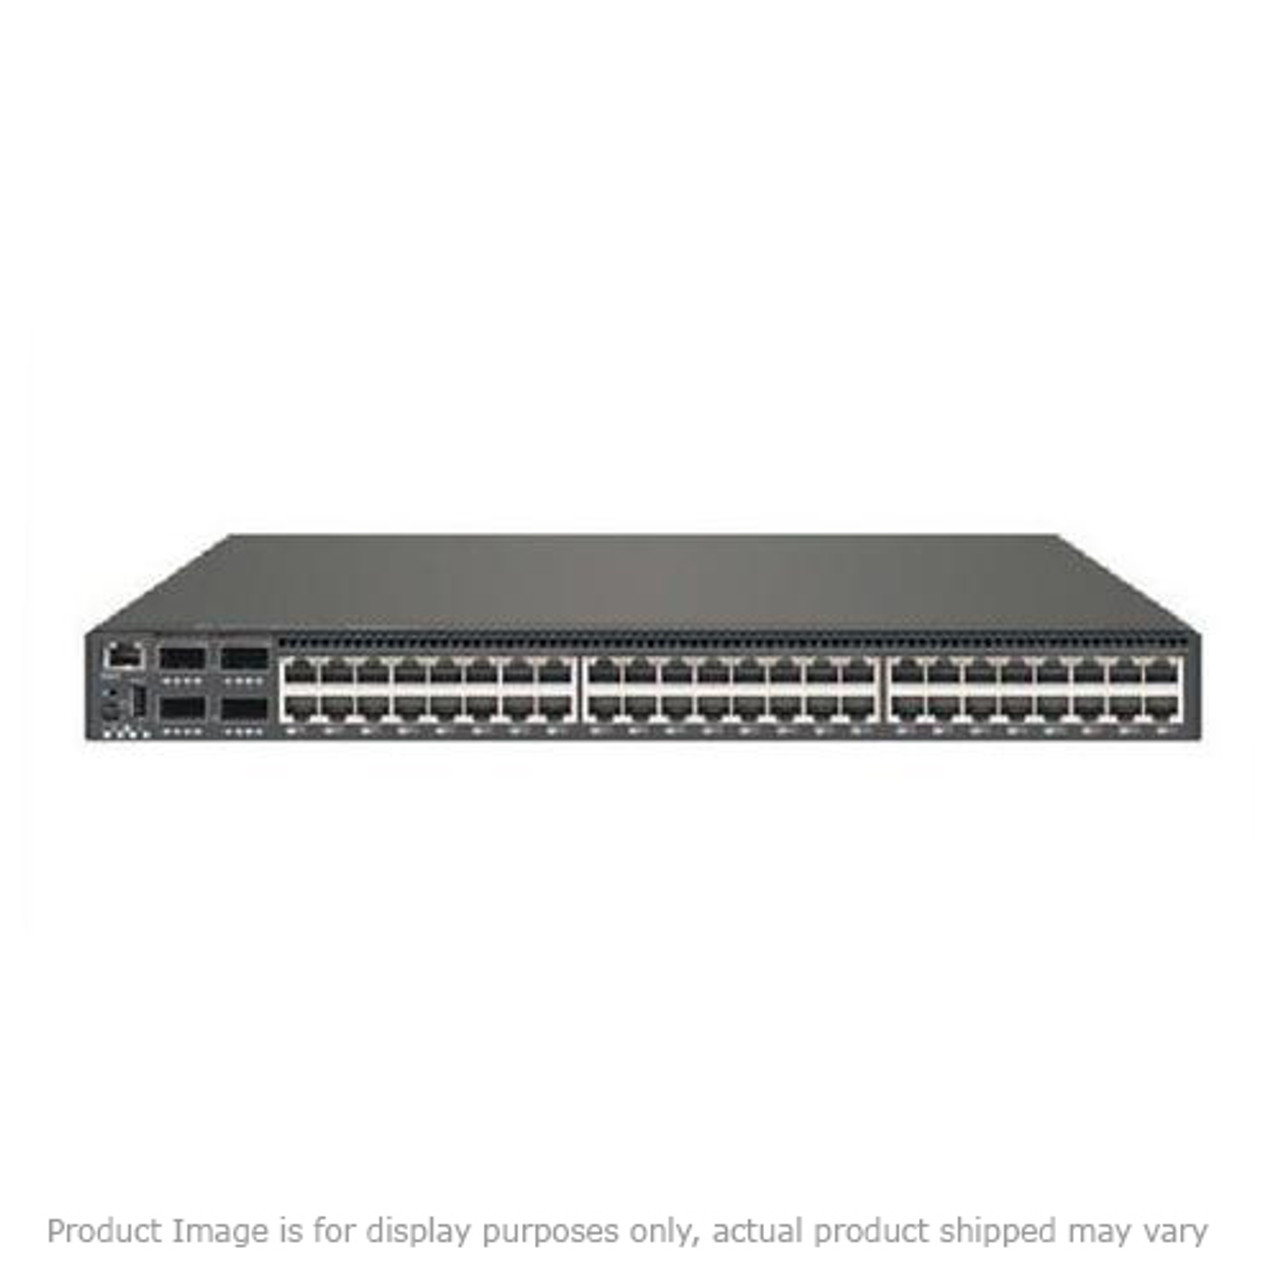 N97K0680 Cisco Atm-ces Option 7200 Switch (Refurbished)